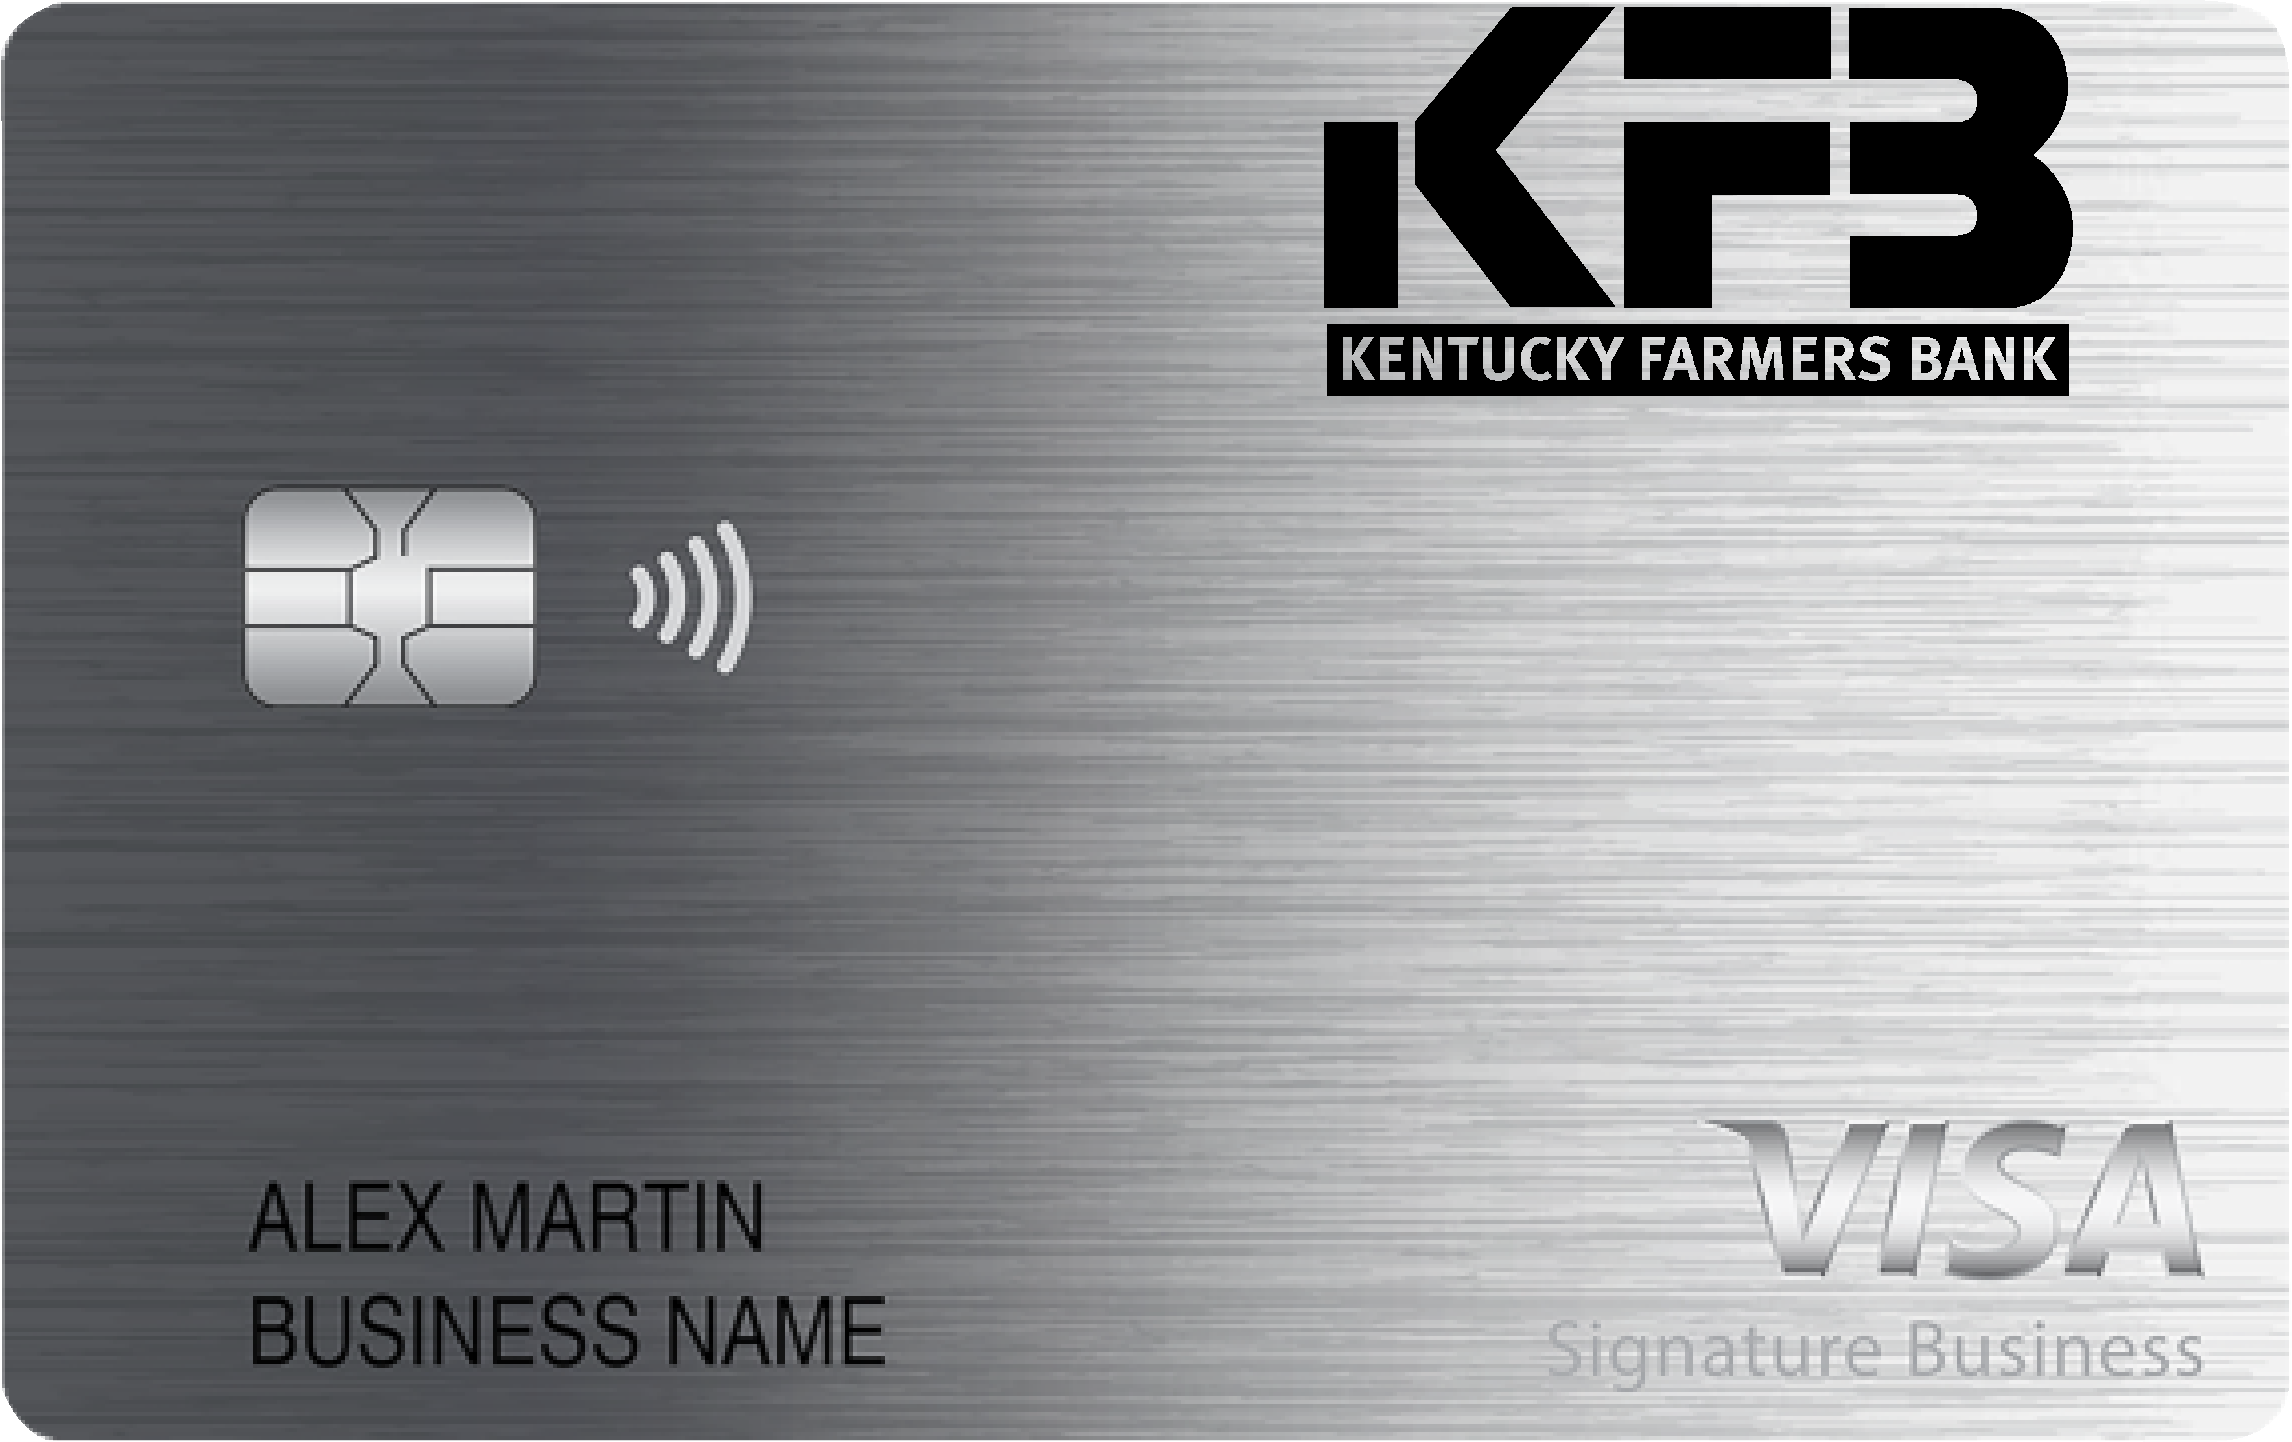 Kentucky-Farmers Bank Smart Business Rewards Card